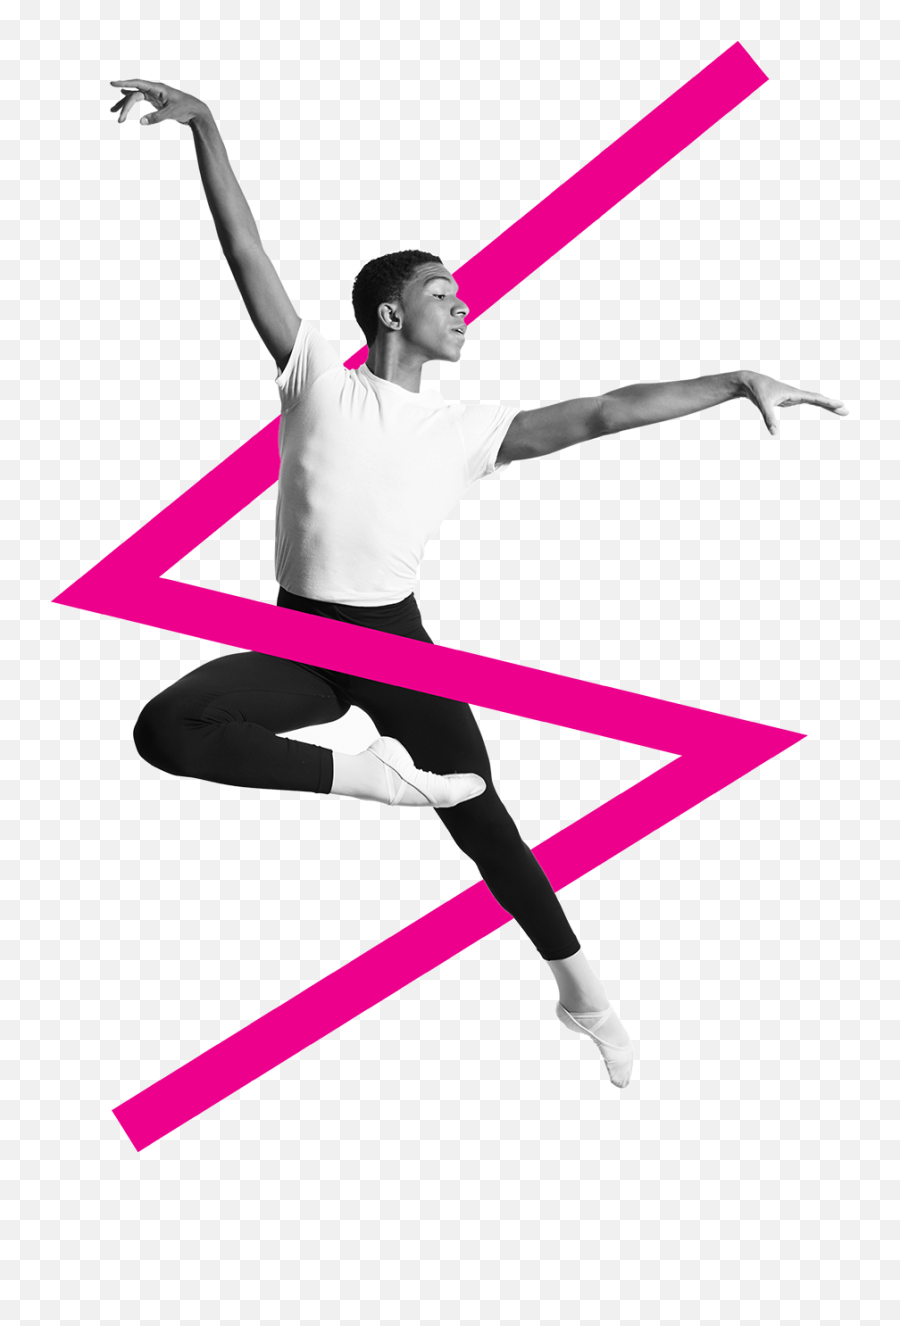 School Of American Ballet - Capital Campaign Branding Ballet Dancer Emoji,Ballet Clipart